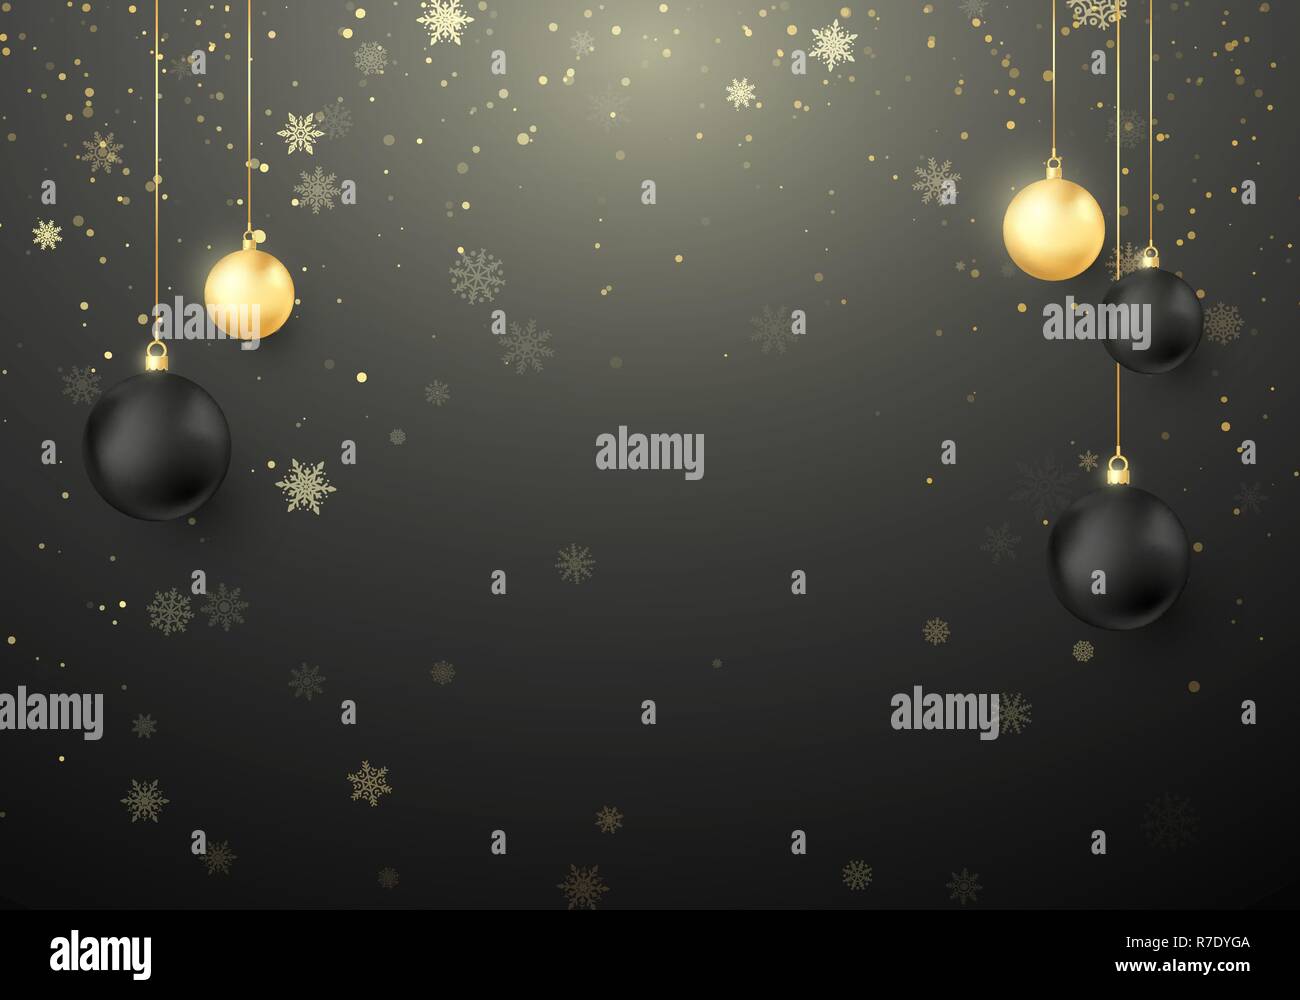 Glänzend Weihnachten Hintergrund. Schneeflocken und funkelt mit goldenen und schwarzen Weihnachtskugeln Dekoration. Vector Illustration Stock Vektor